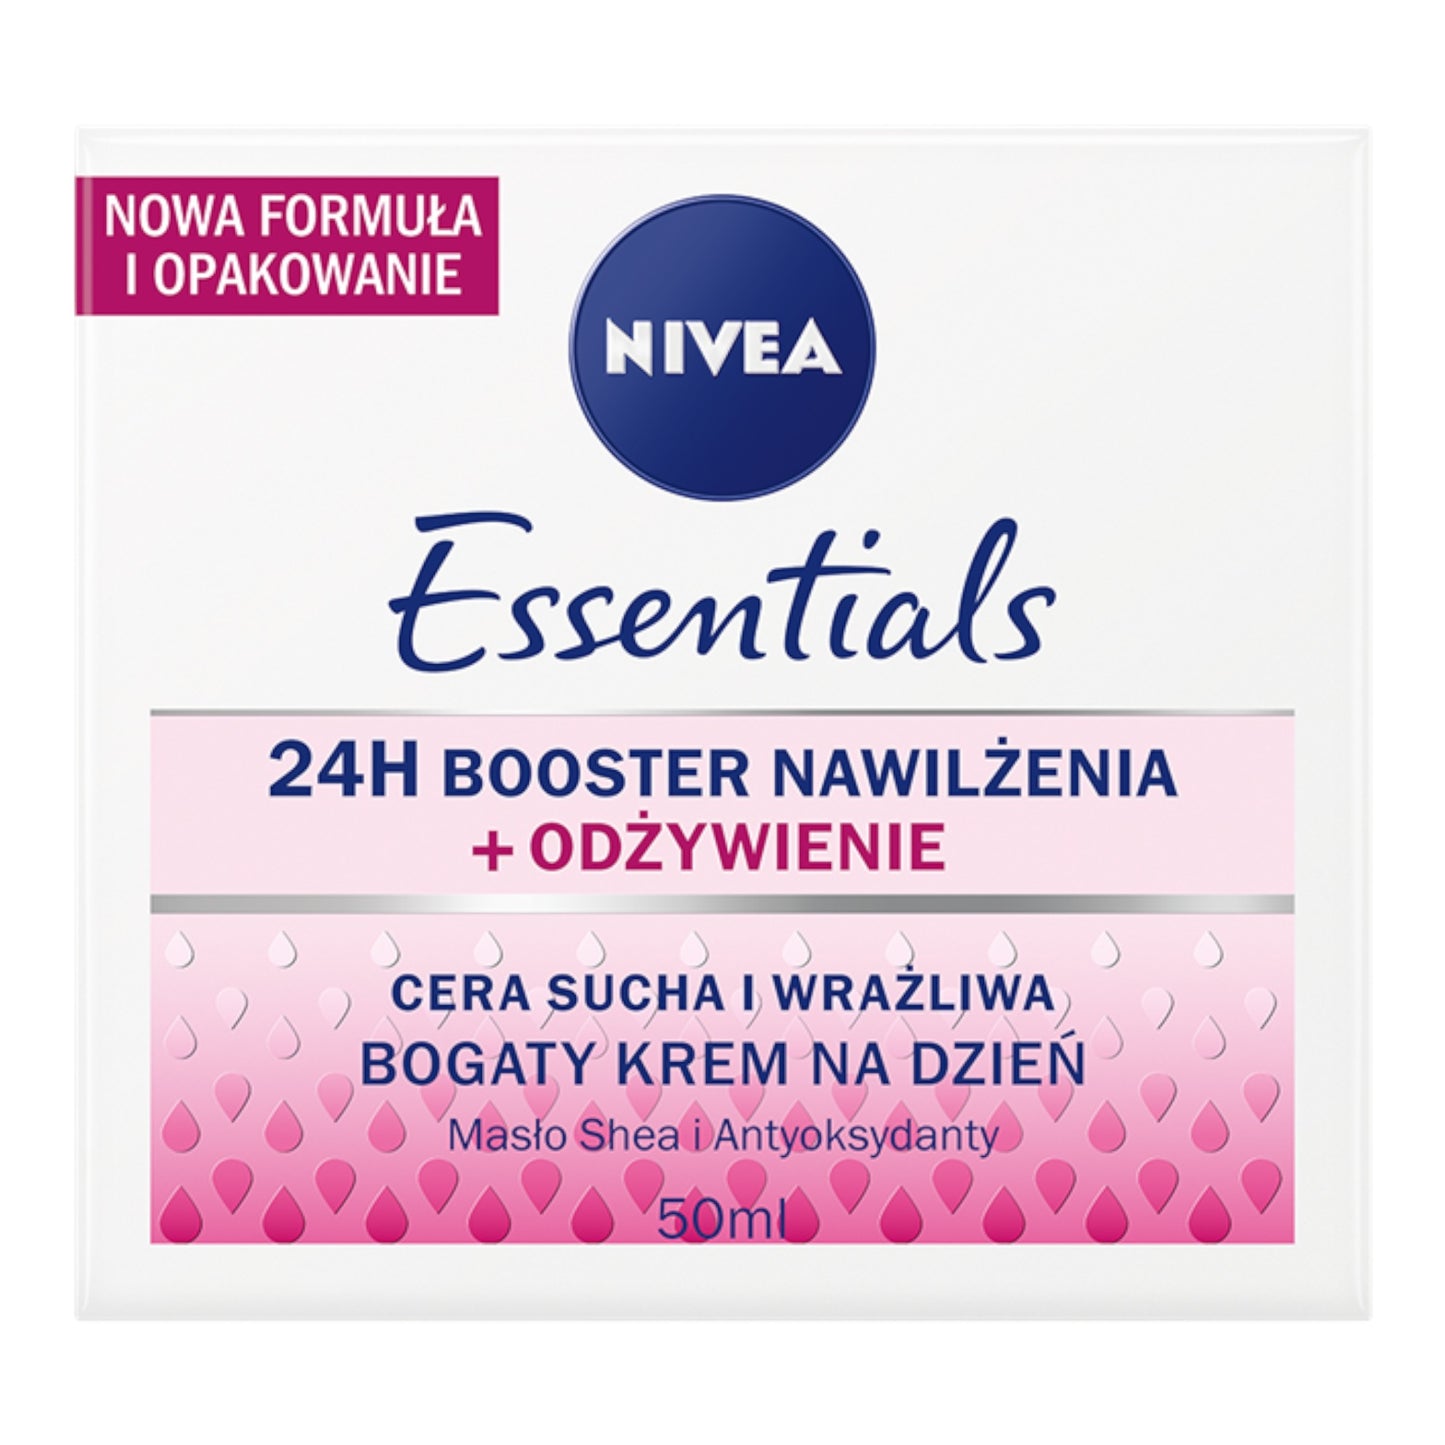 Nivea Essentials 24H Booster Nawilżenia i odżywienie 50ml